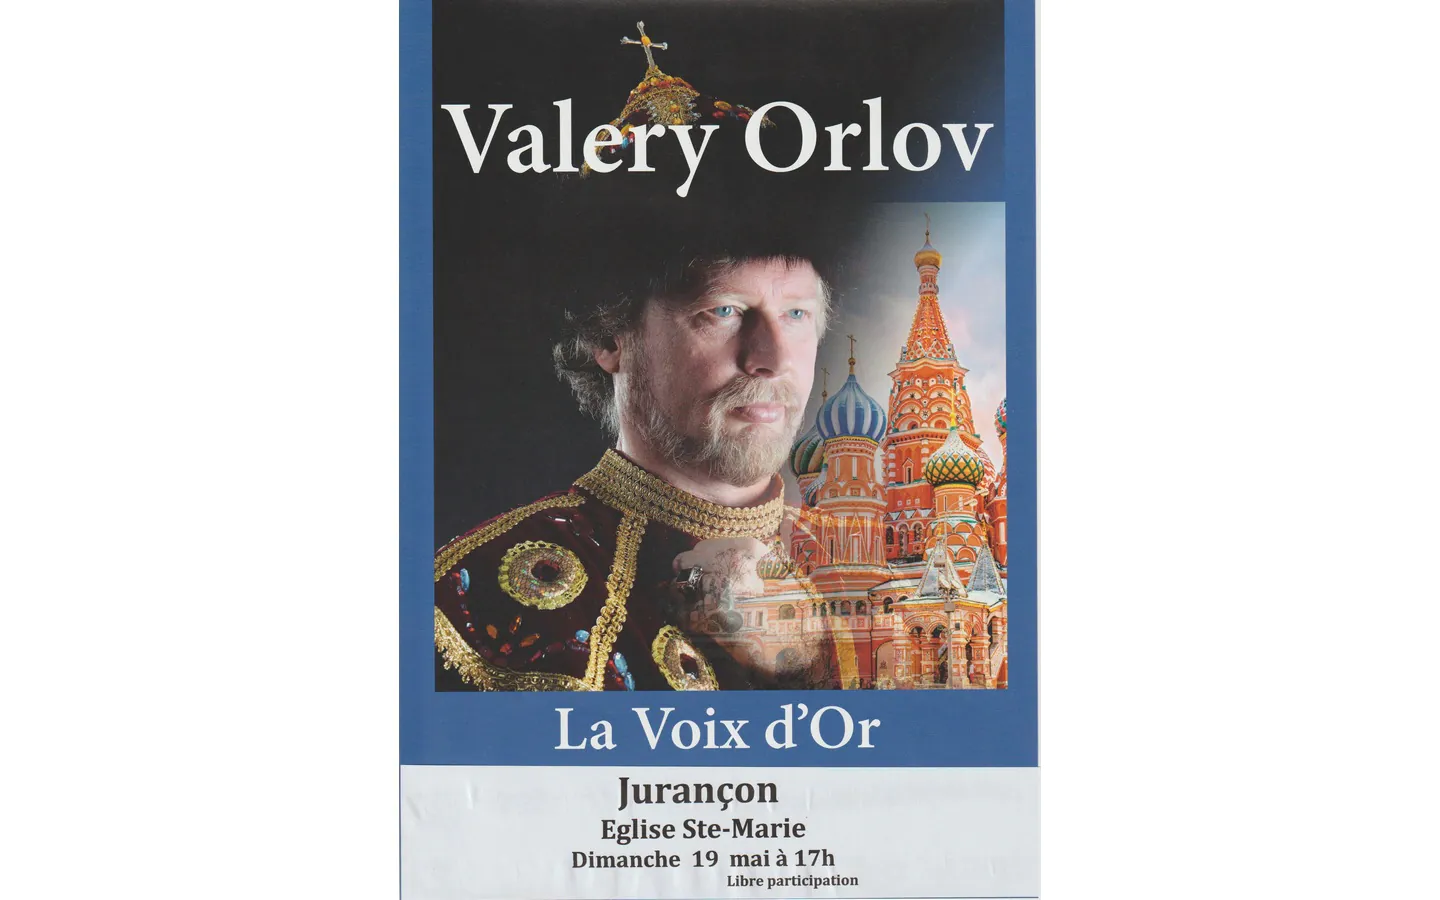 Valery Orlov: Les plus beaux chants slaves